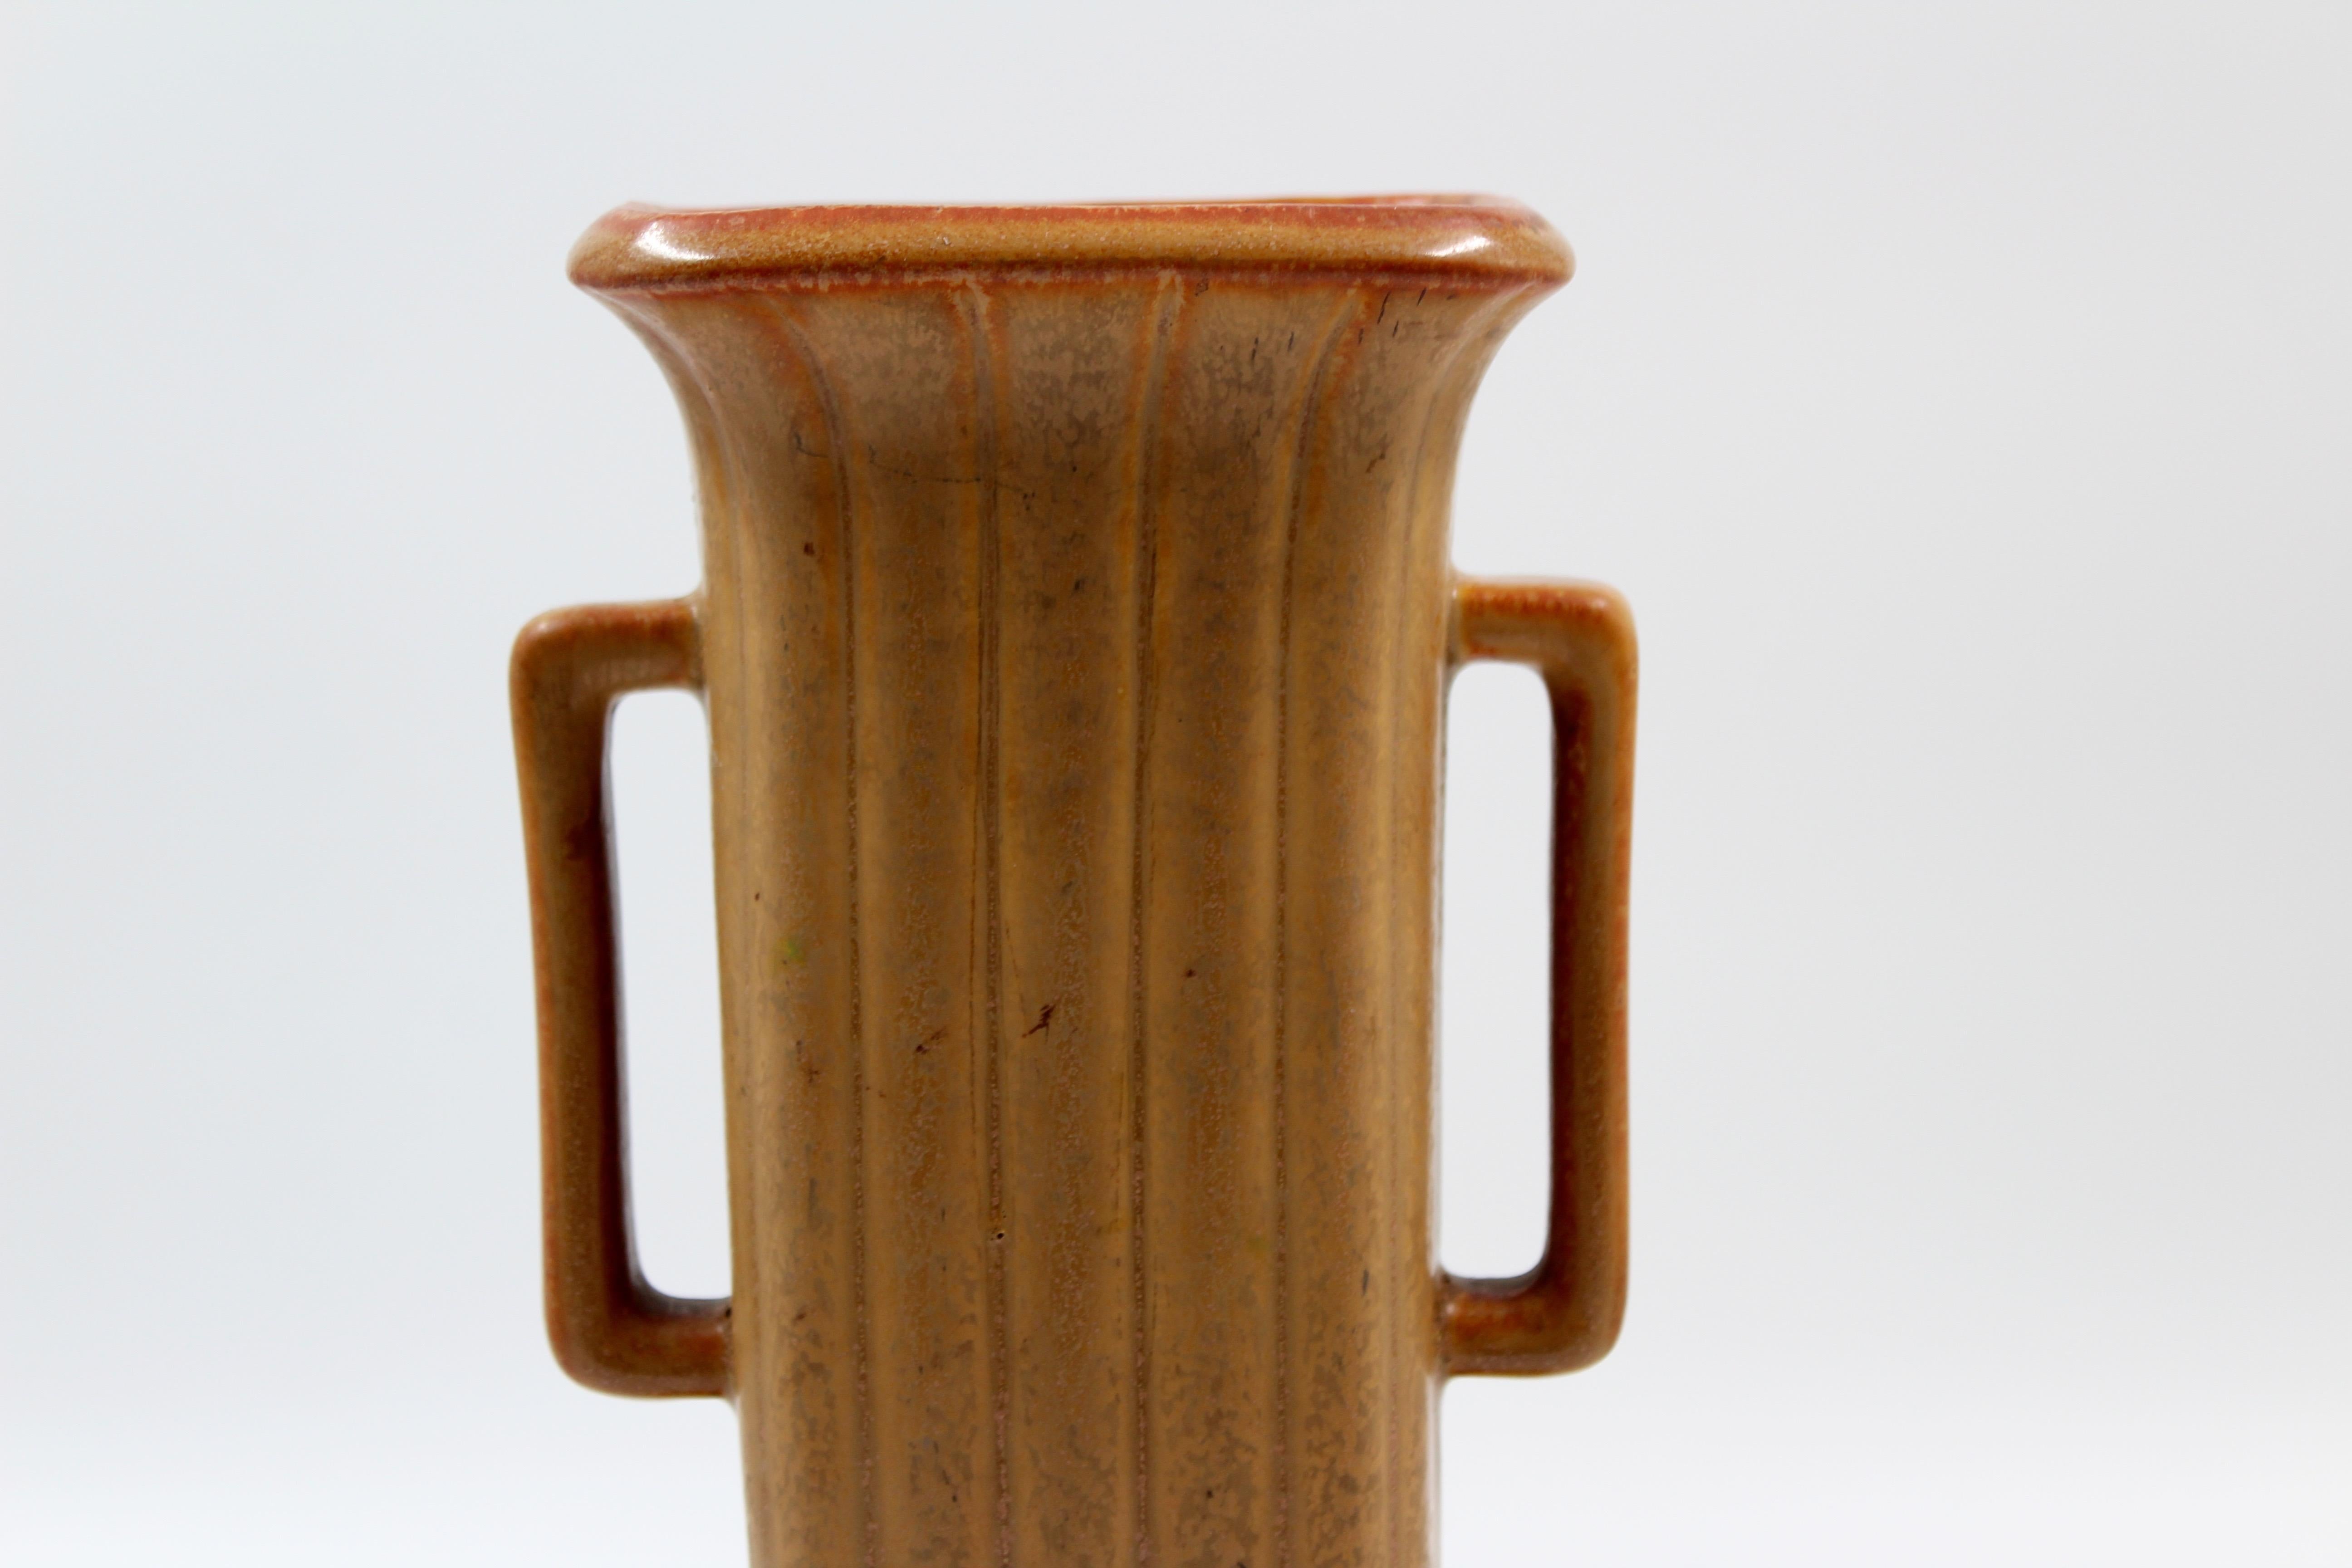 Scandinavian Modern Midcentury Ceramic Vase by Gunnar Nylund, 1950s